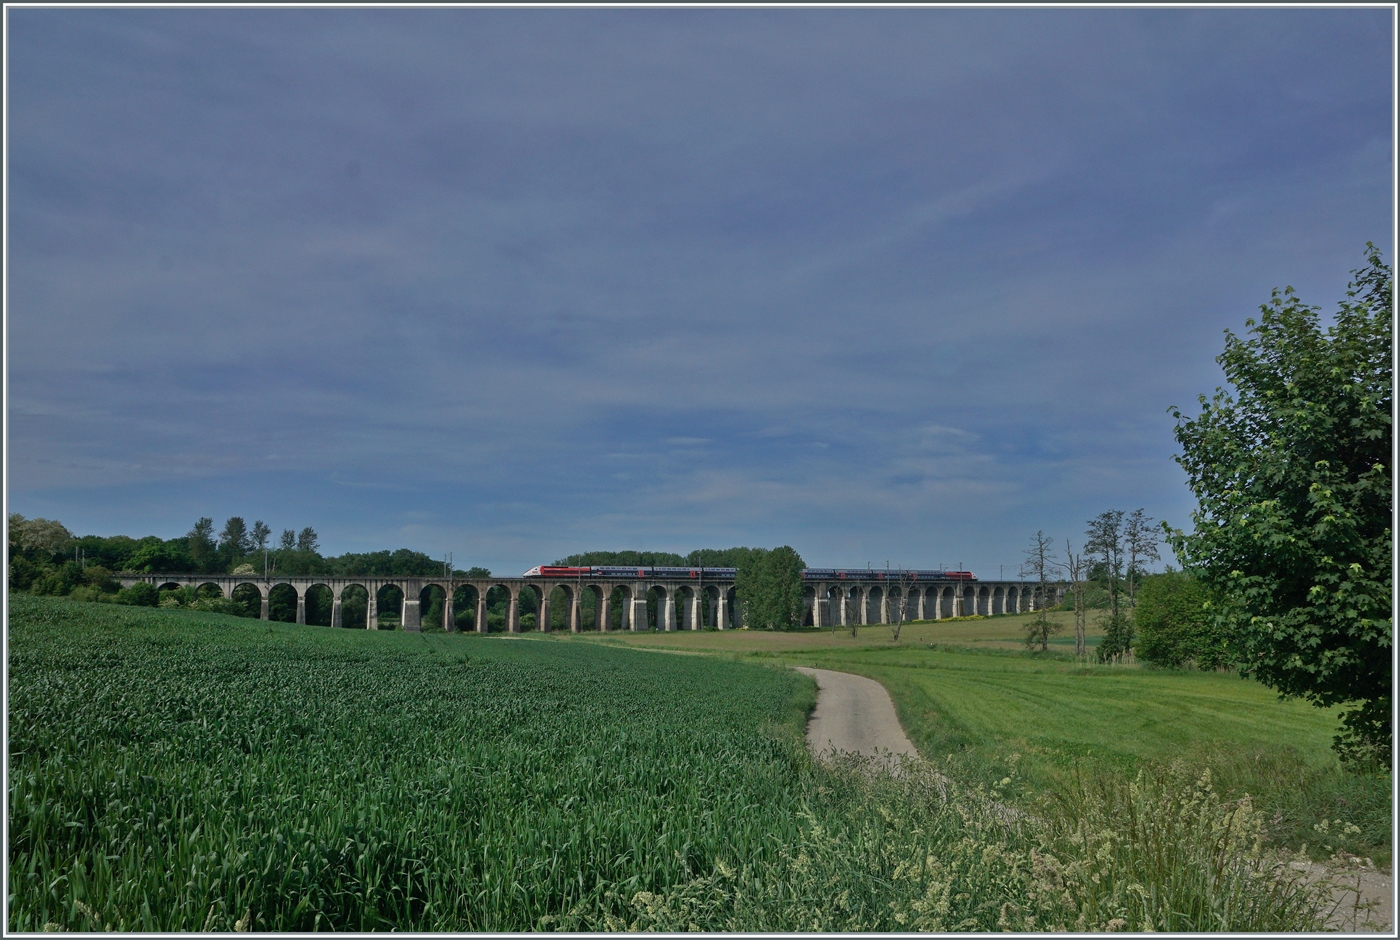 Der Lyria TGV 9203 von Paris nach Zürich überquert kurz nach Dannemarie den 380 Meter langen Viaduc de Ballerdorf. Der Viadukt wurde 1857 gebaut und verband Dannemarie mit Basel. 

19. Mai 2022 